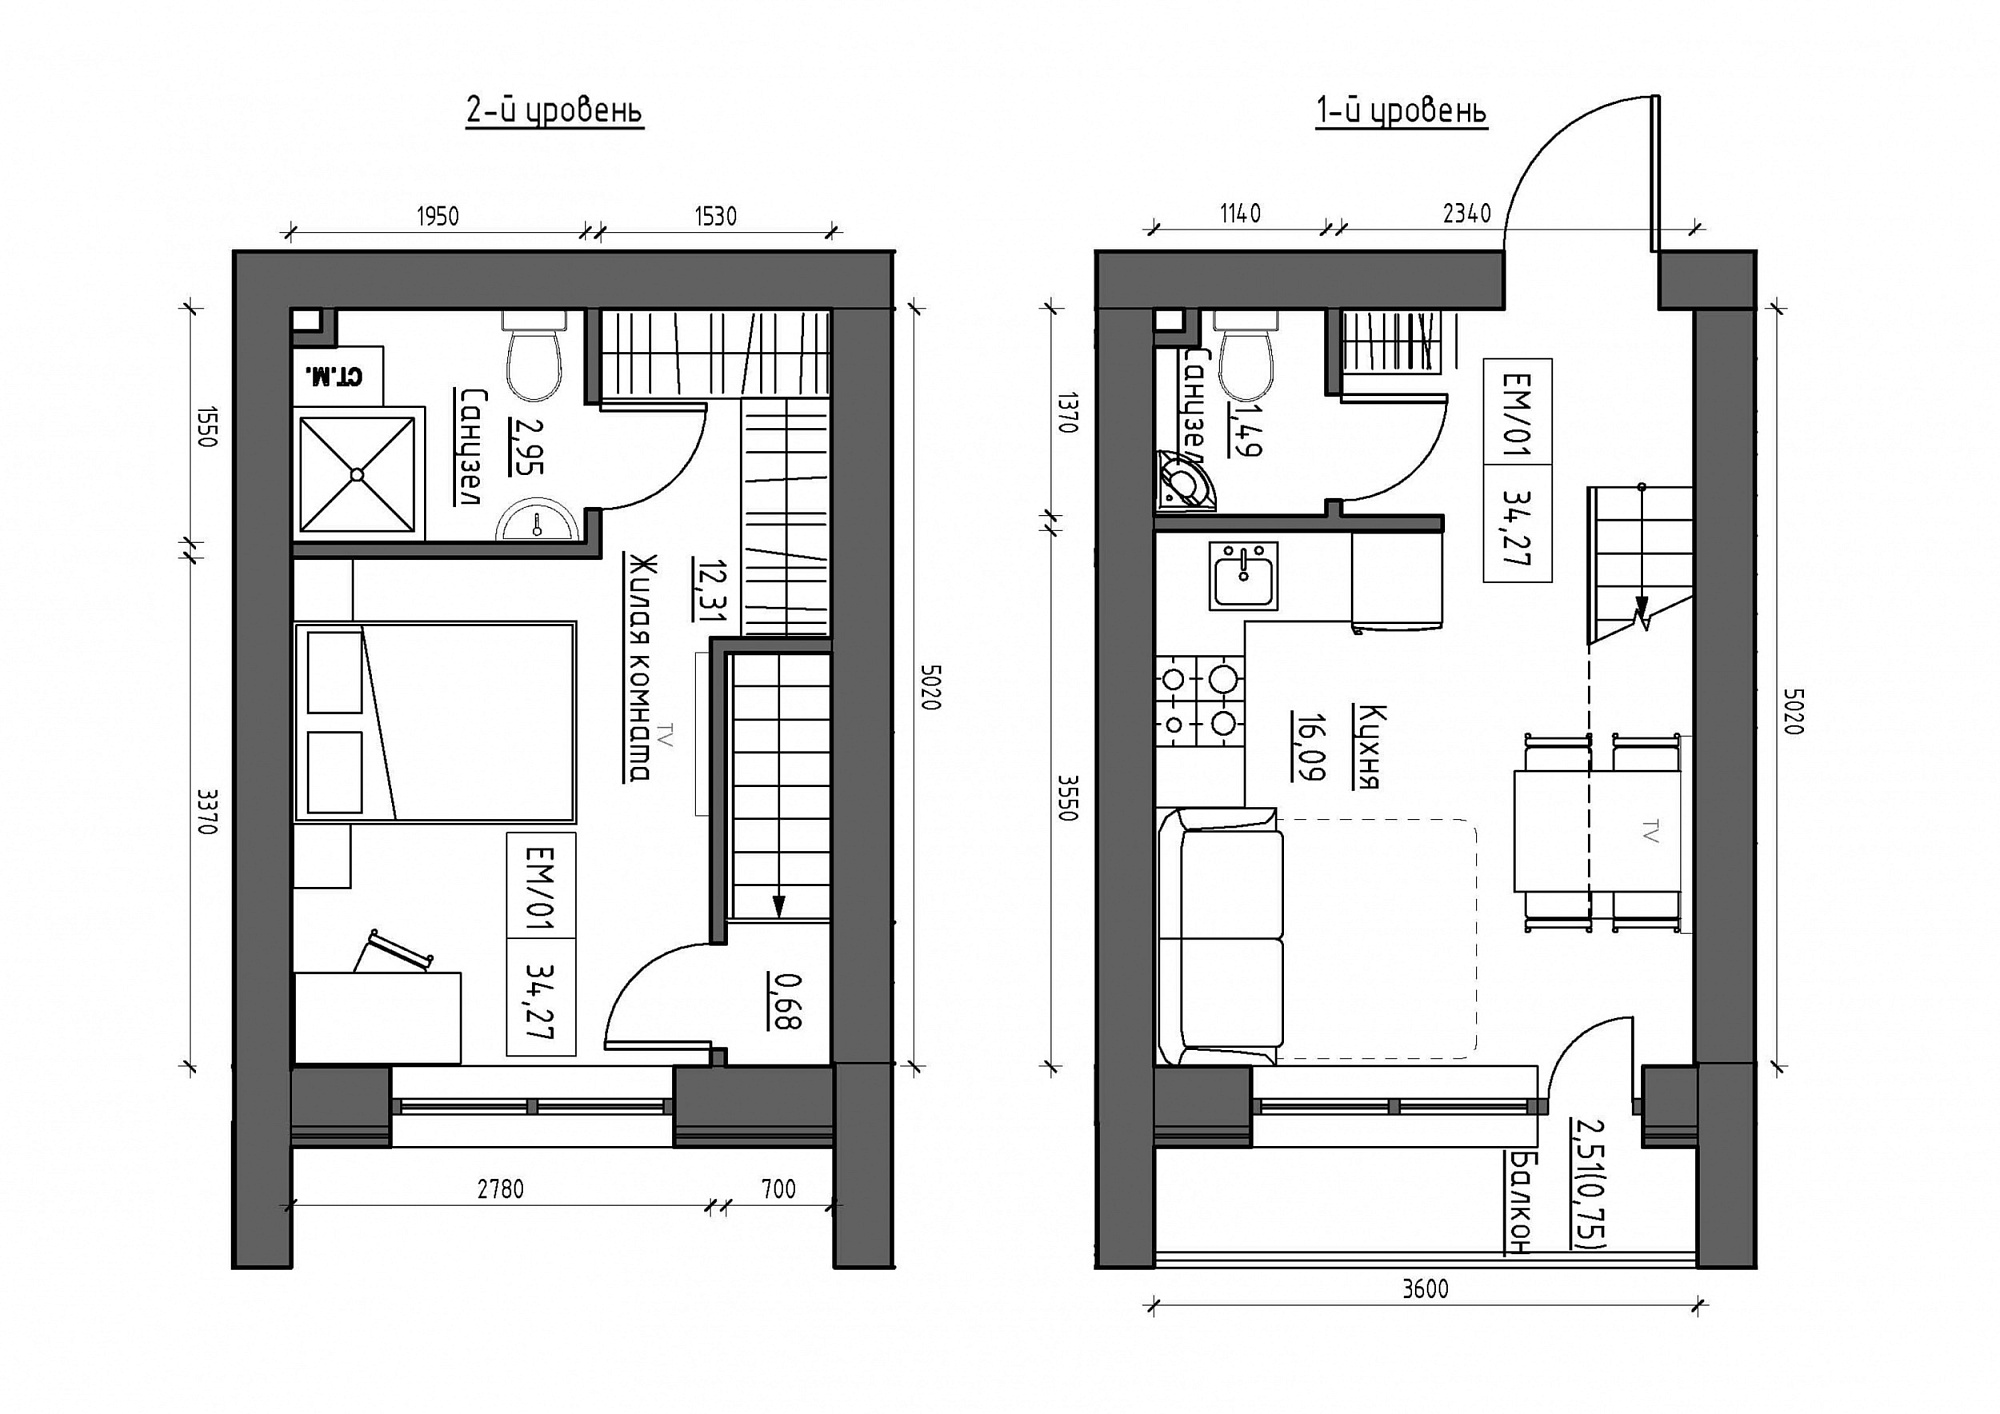 Planning 2-lvl flats area 34.27m2, KS-011-05/0007.